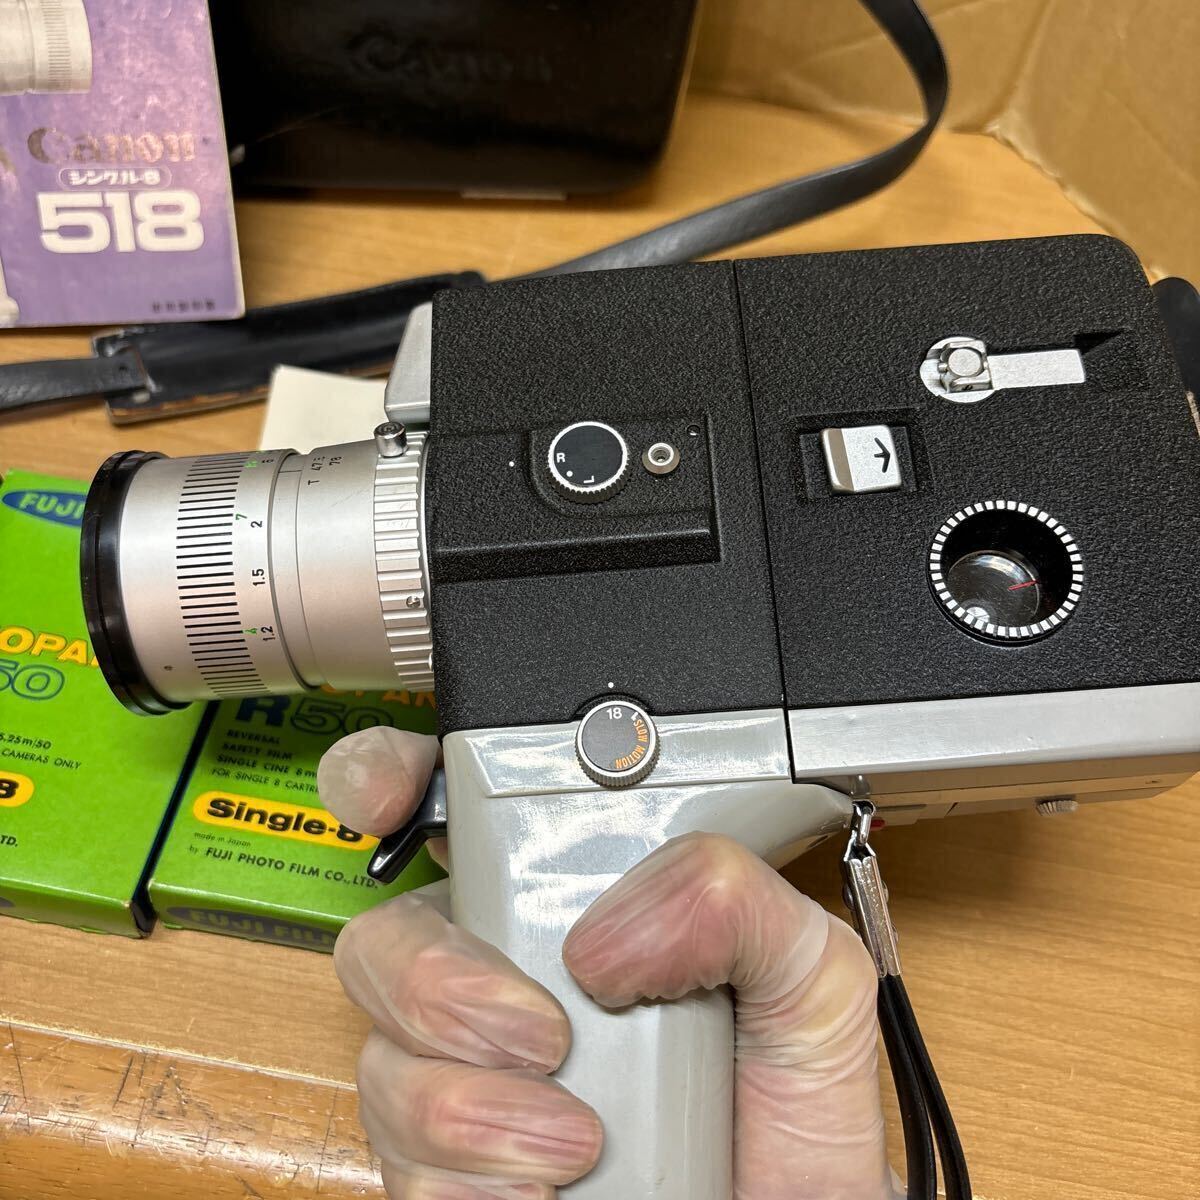 TA-691☆80サイズ☆ 8mmシネカメラ Canon / キャノン Single 8 518/シングル-8 518 動作未確認ジャンク品の画像6